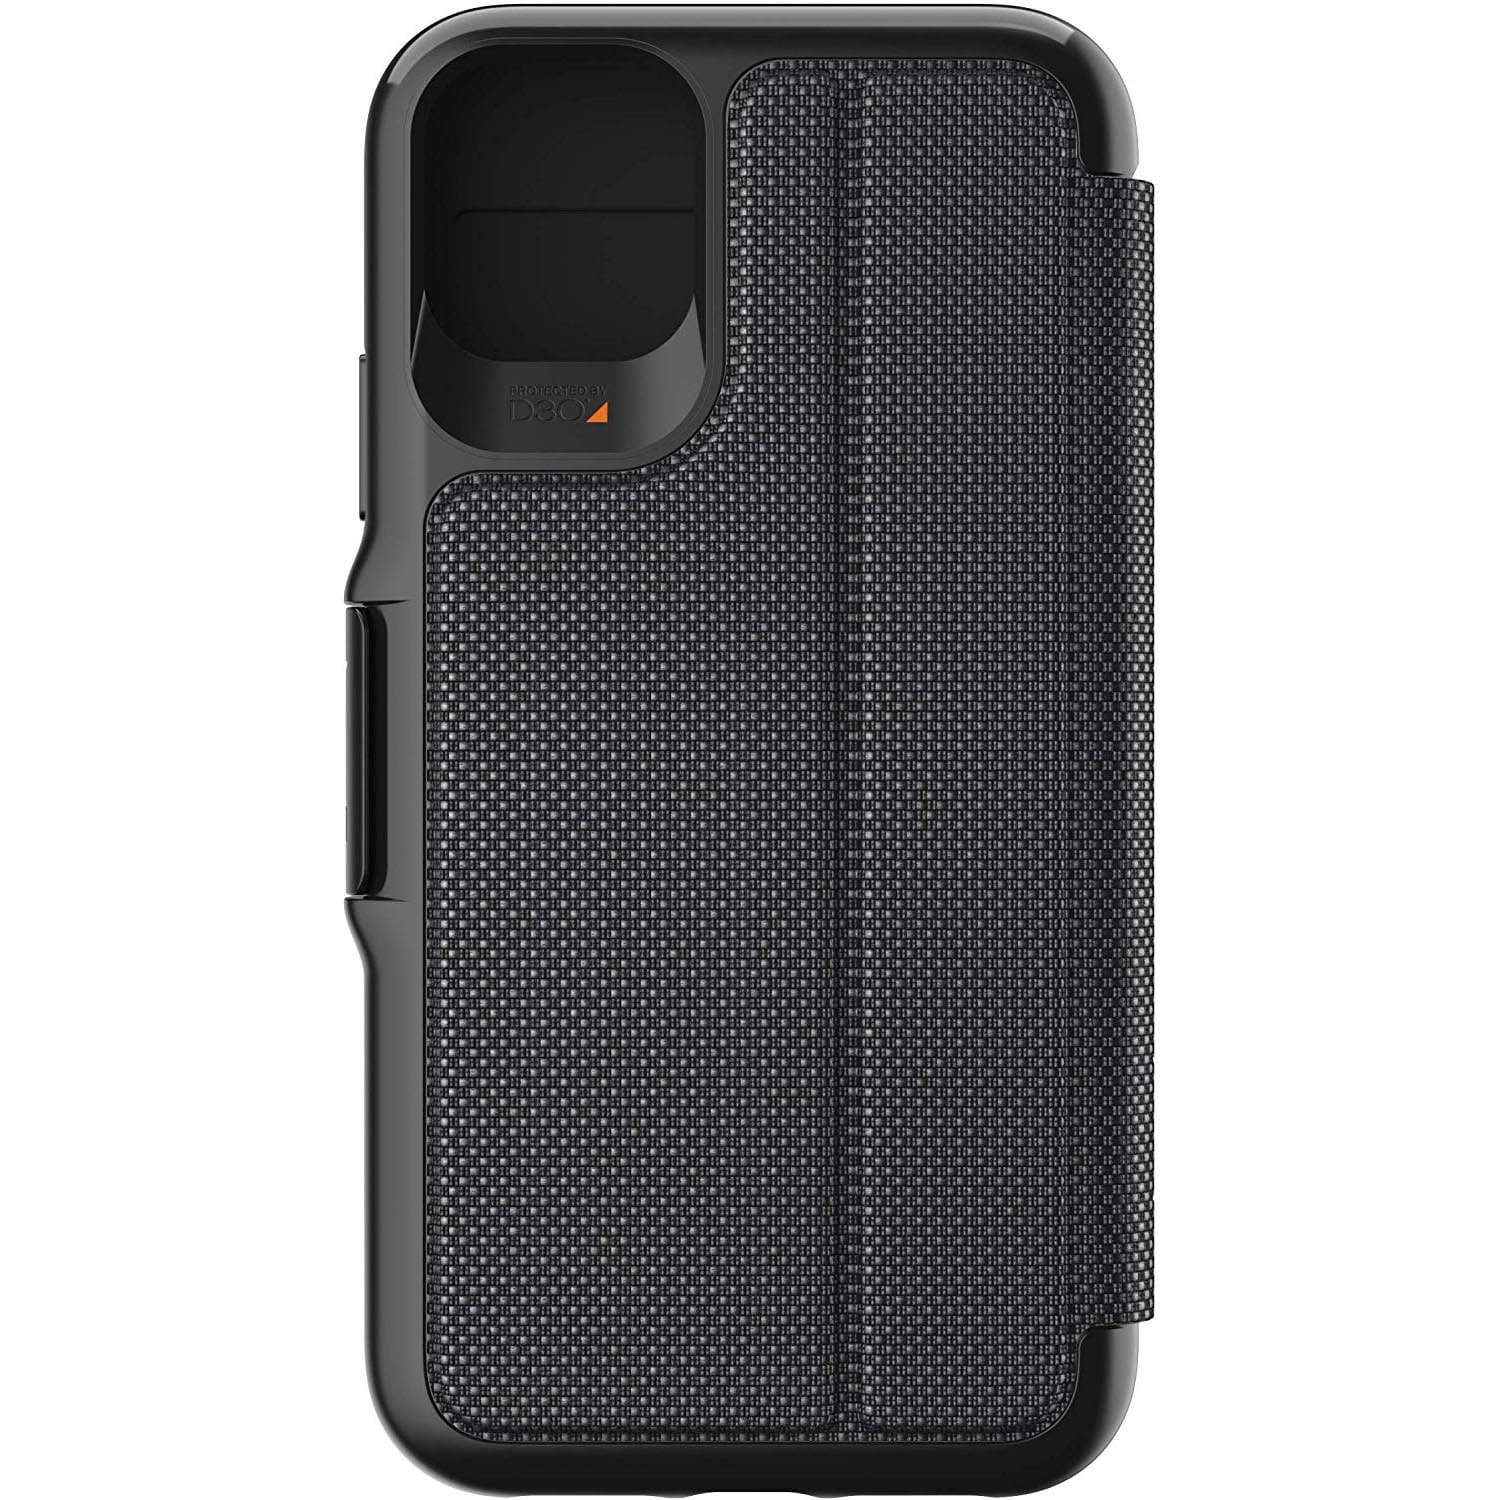 Schutzhülle Gear4 aus der Serie D3O Oxford Eco für iPhone 11 Pro Max schwarz.